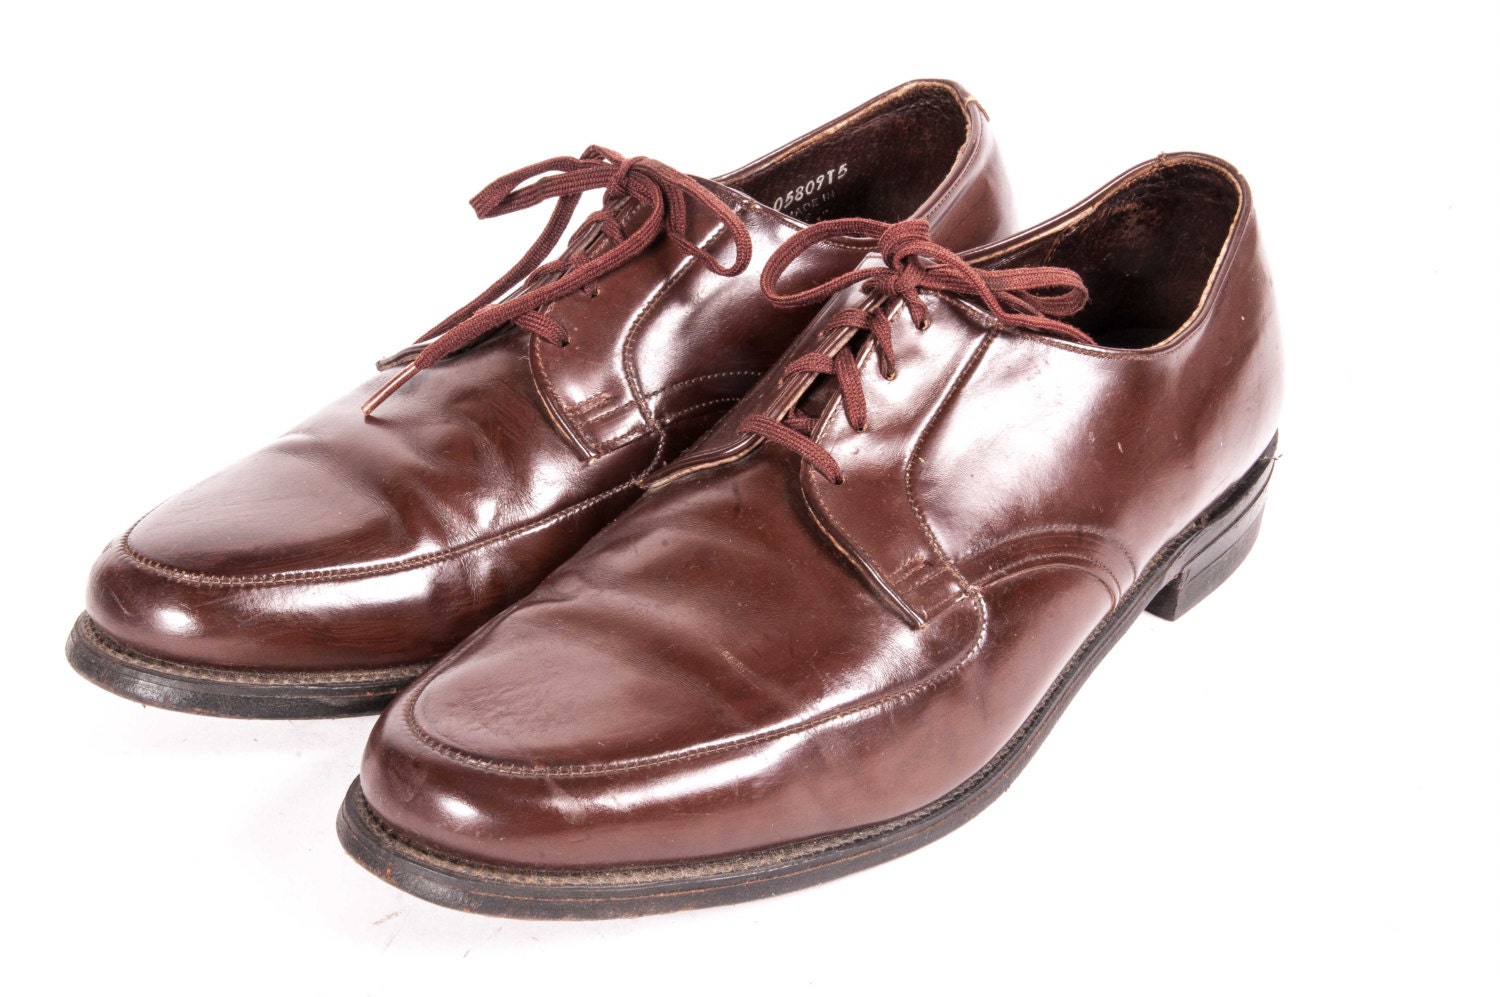 1960's Men's BROWN Dress Shoes Size 11 E WIDE